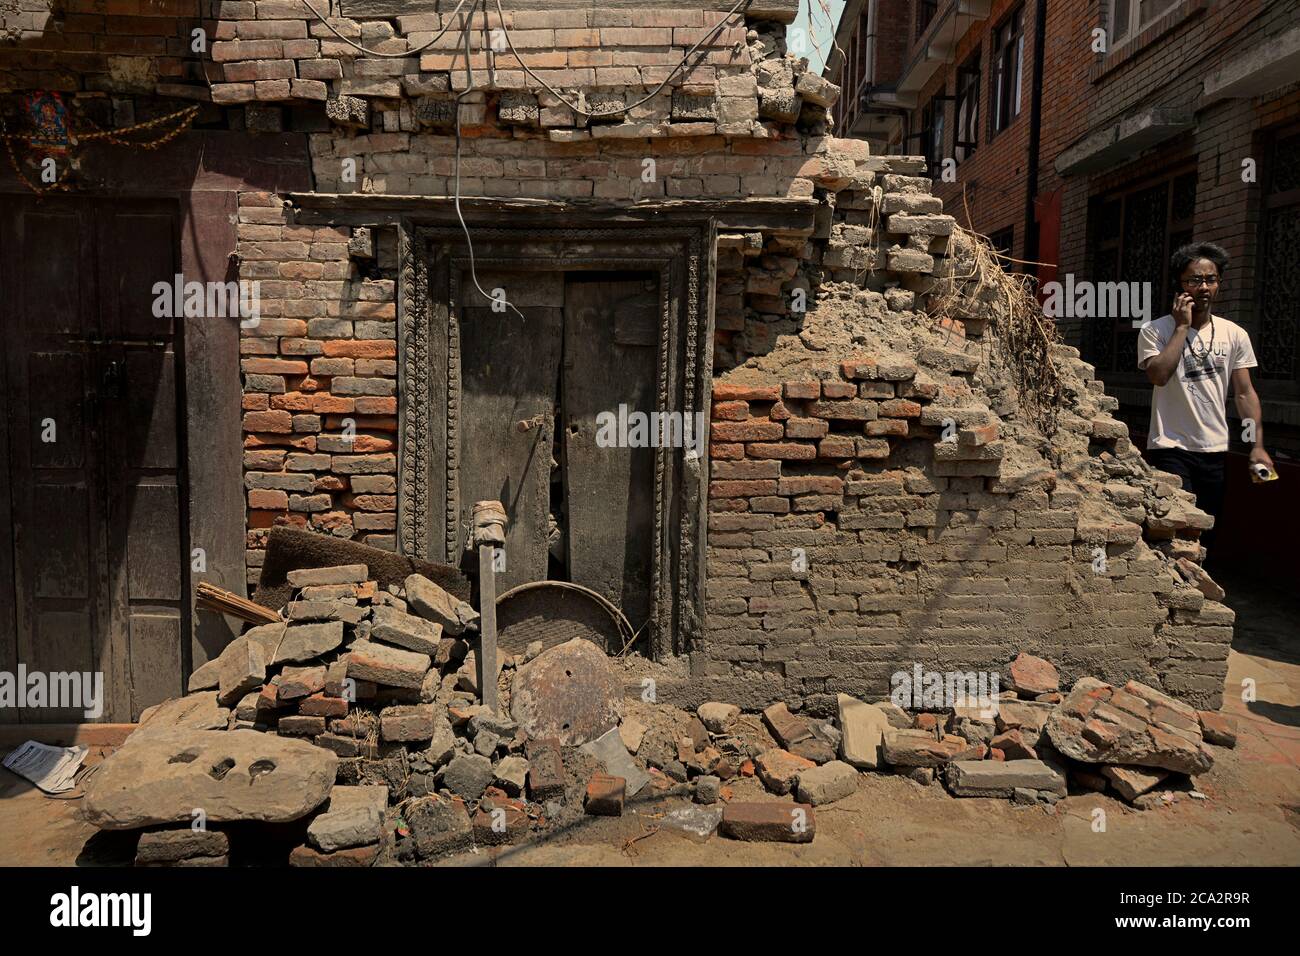 Ein Bhaktapur-Bürger, der auf einer Wohnallee spaziert, in der Gebäude durch die Erdbeben von 2015 in Nepal beschädigt wurden. Bhaktapur, Nepal. Stockfoto